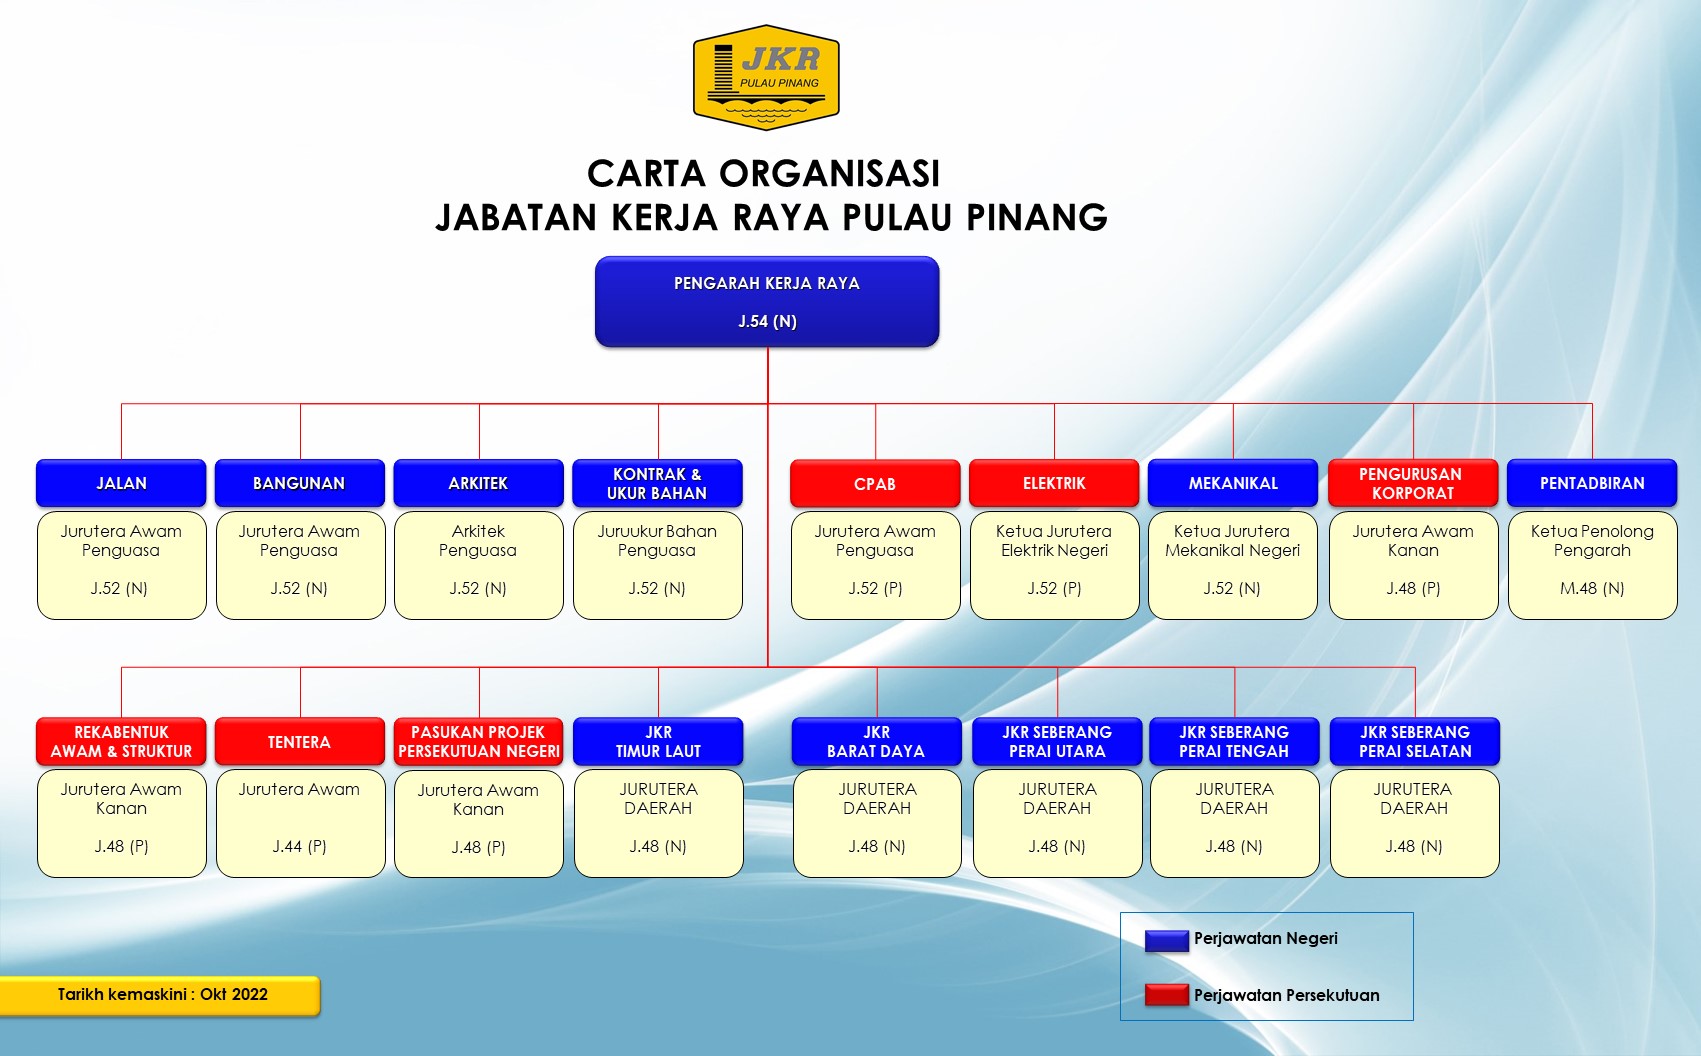 Carta Organisasi JKR Pulau Pinang